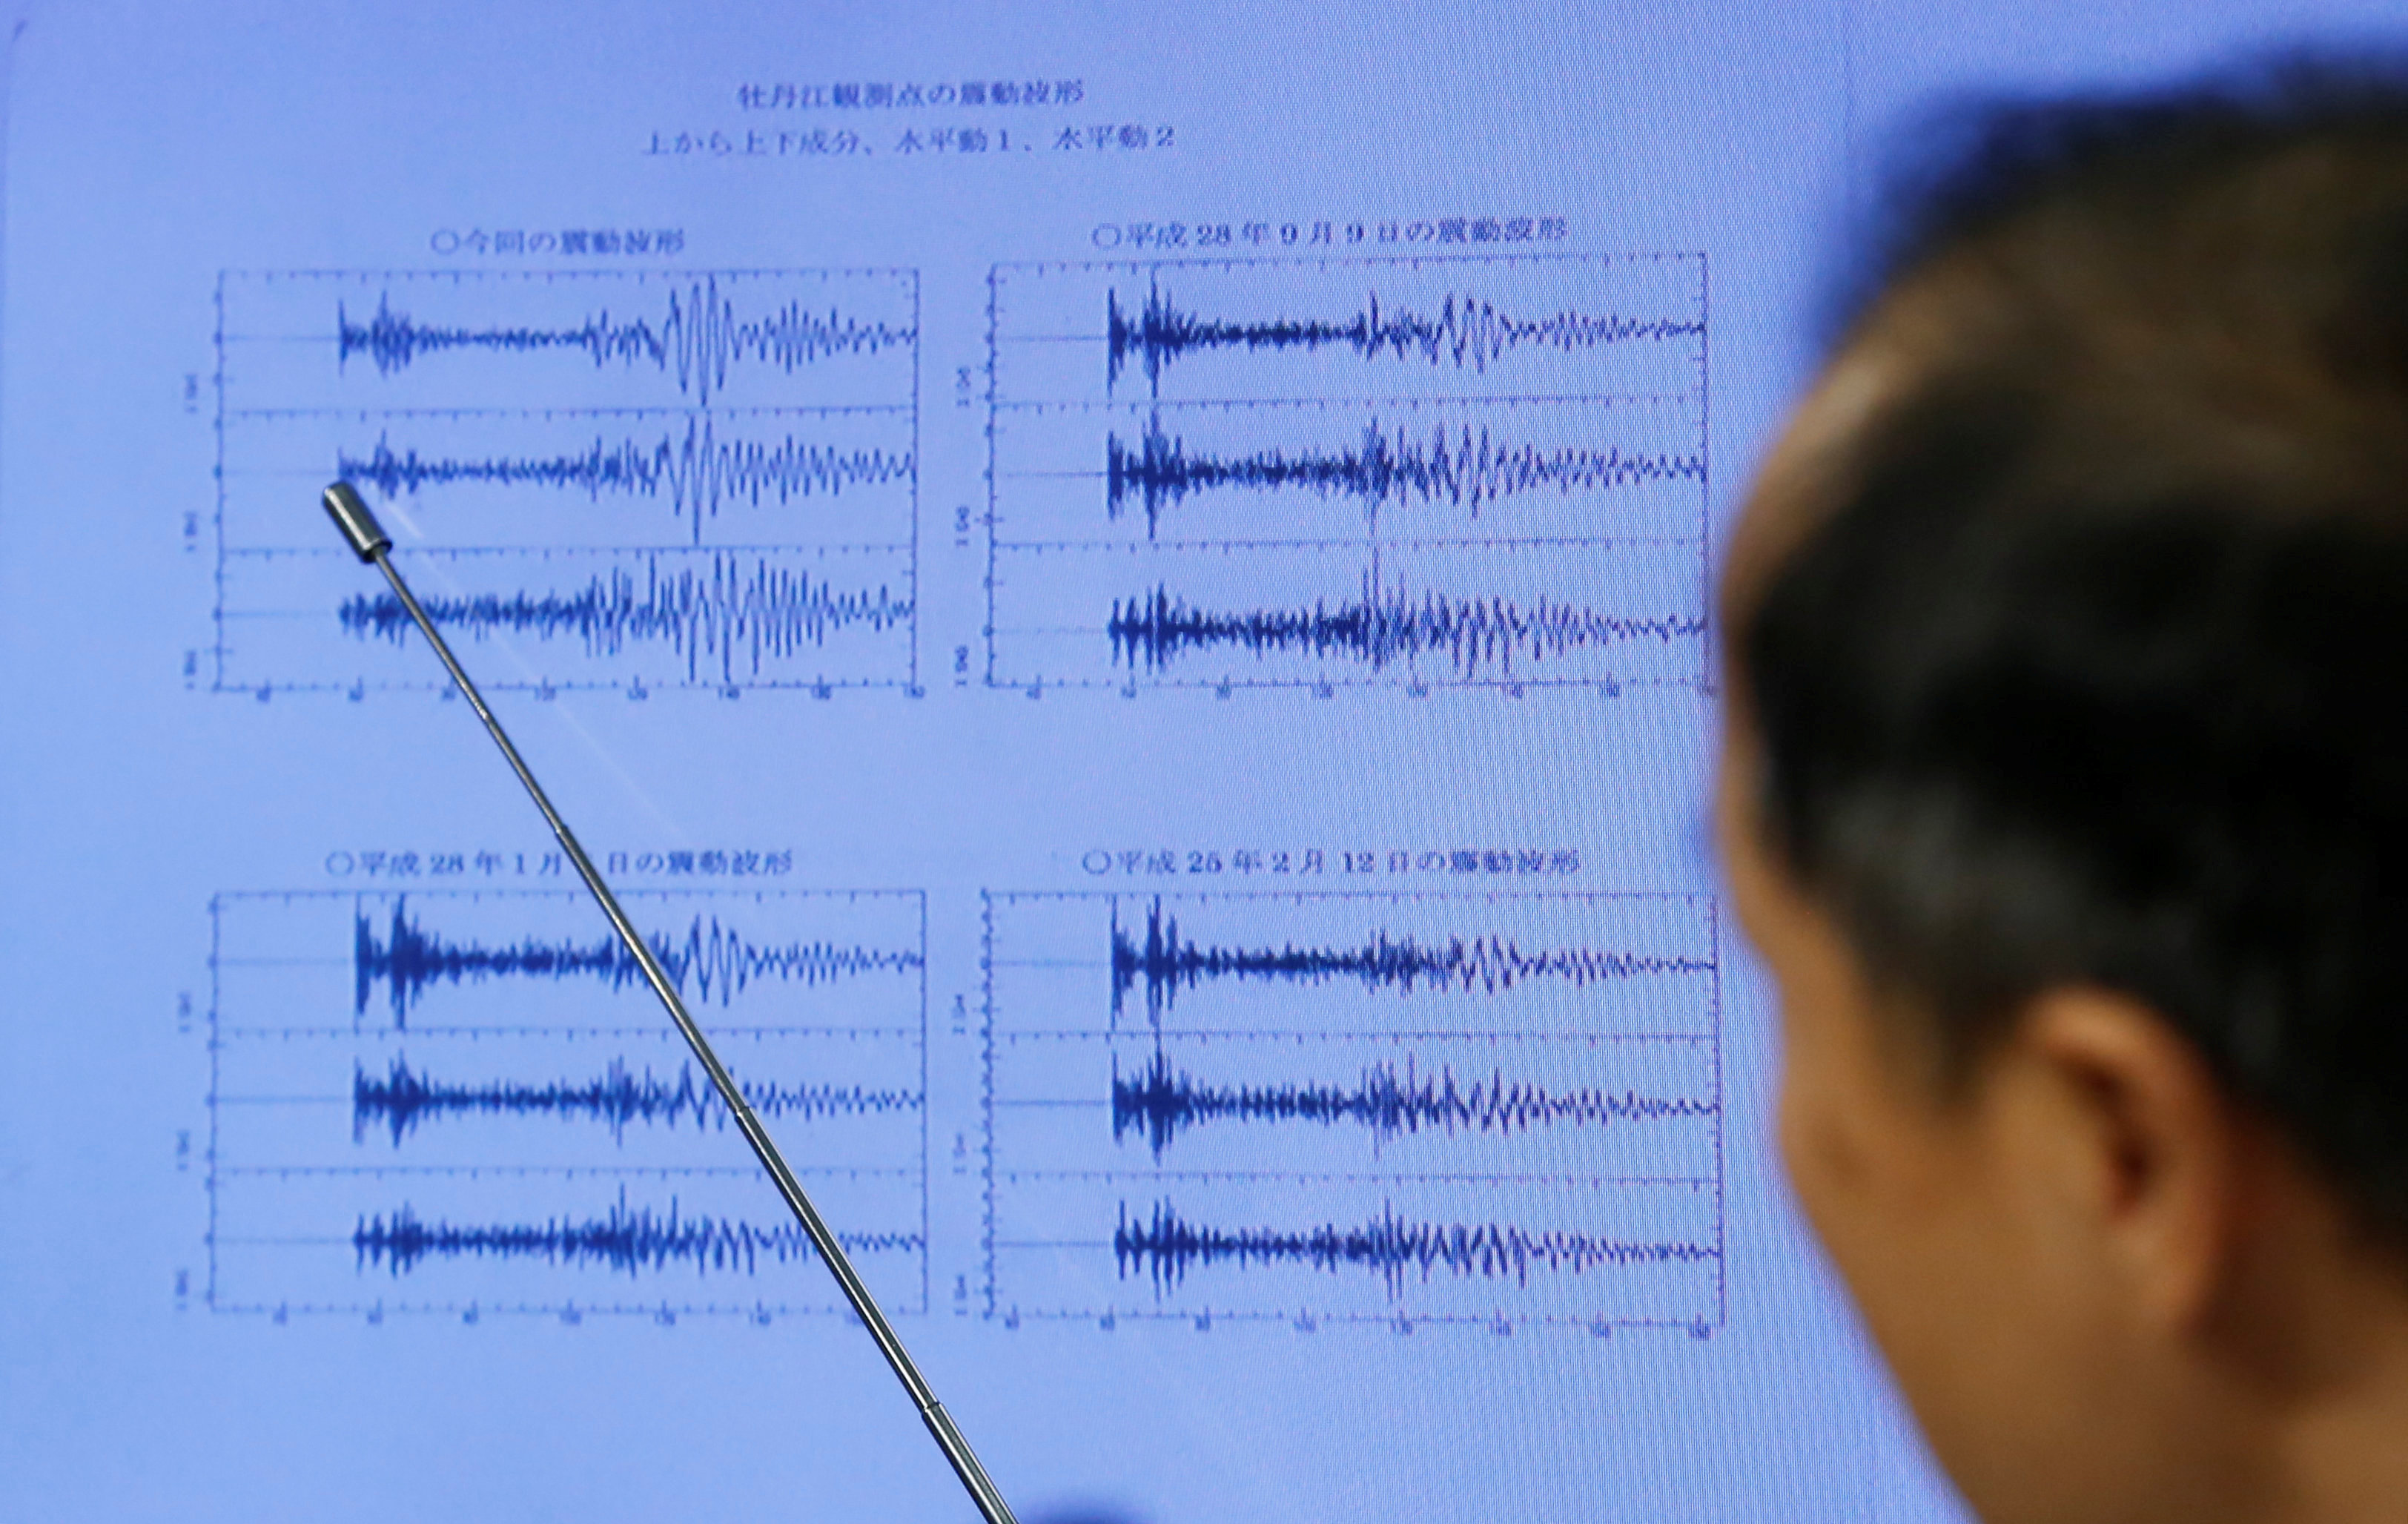 توضيح زلزال كوريا الشمالية بالرسوم البيانية